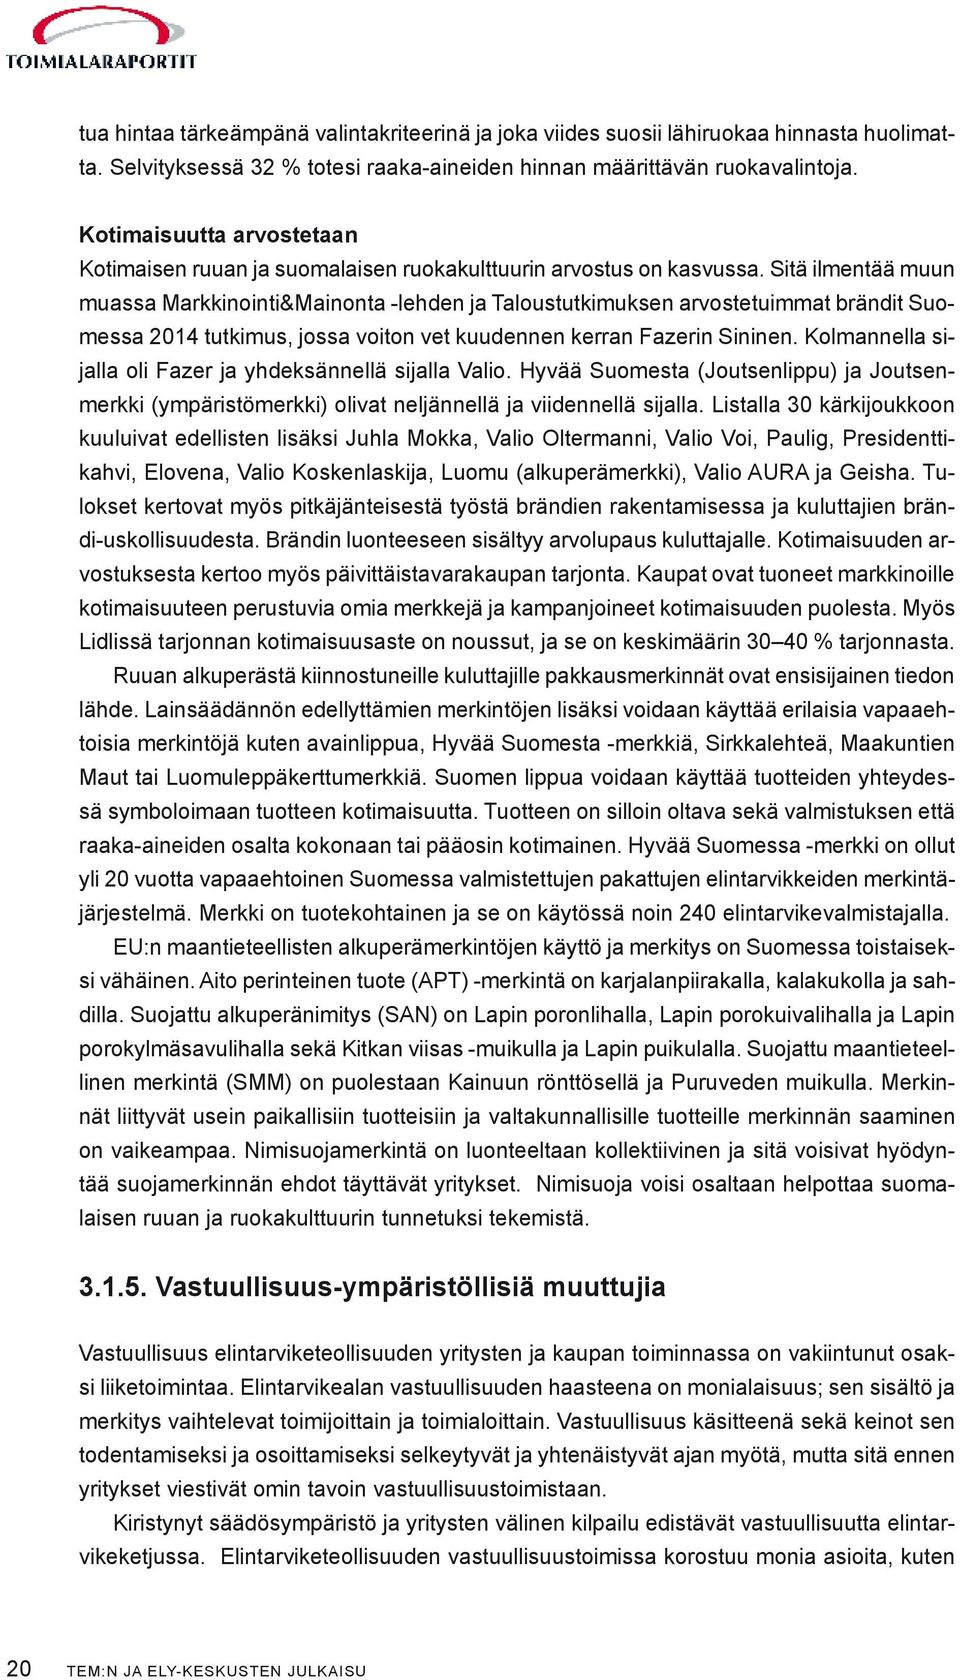 Sitä ilmentää muun muassa Markkinointi&Mainonta -lehden ja Taloustutkimuksen arvostetuimmat brändit Suomessa 2014 tutkimus, jossa voiton vet kuudennen kerran Fazerin Sininen.